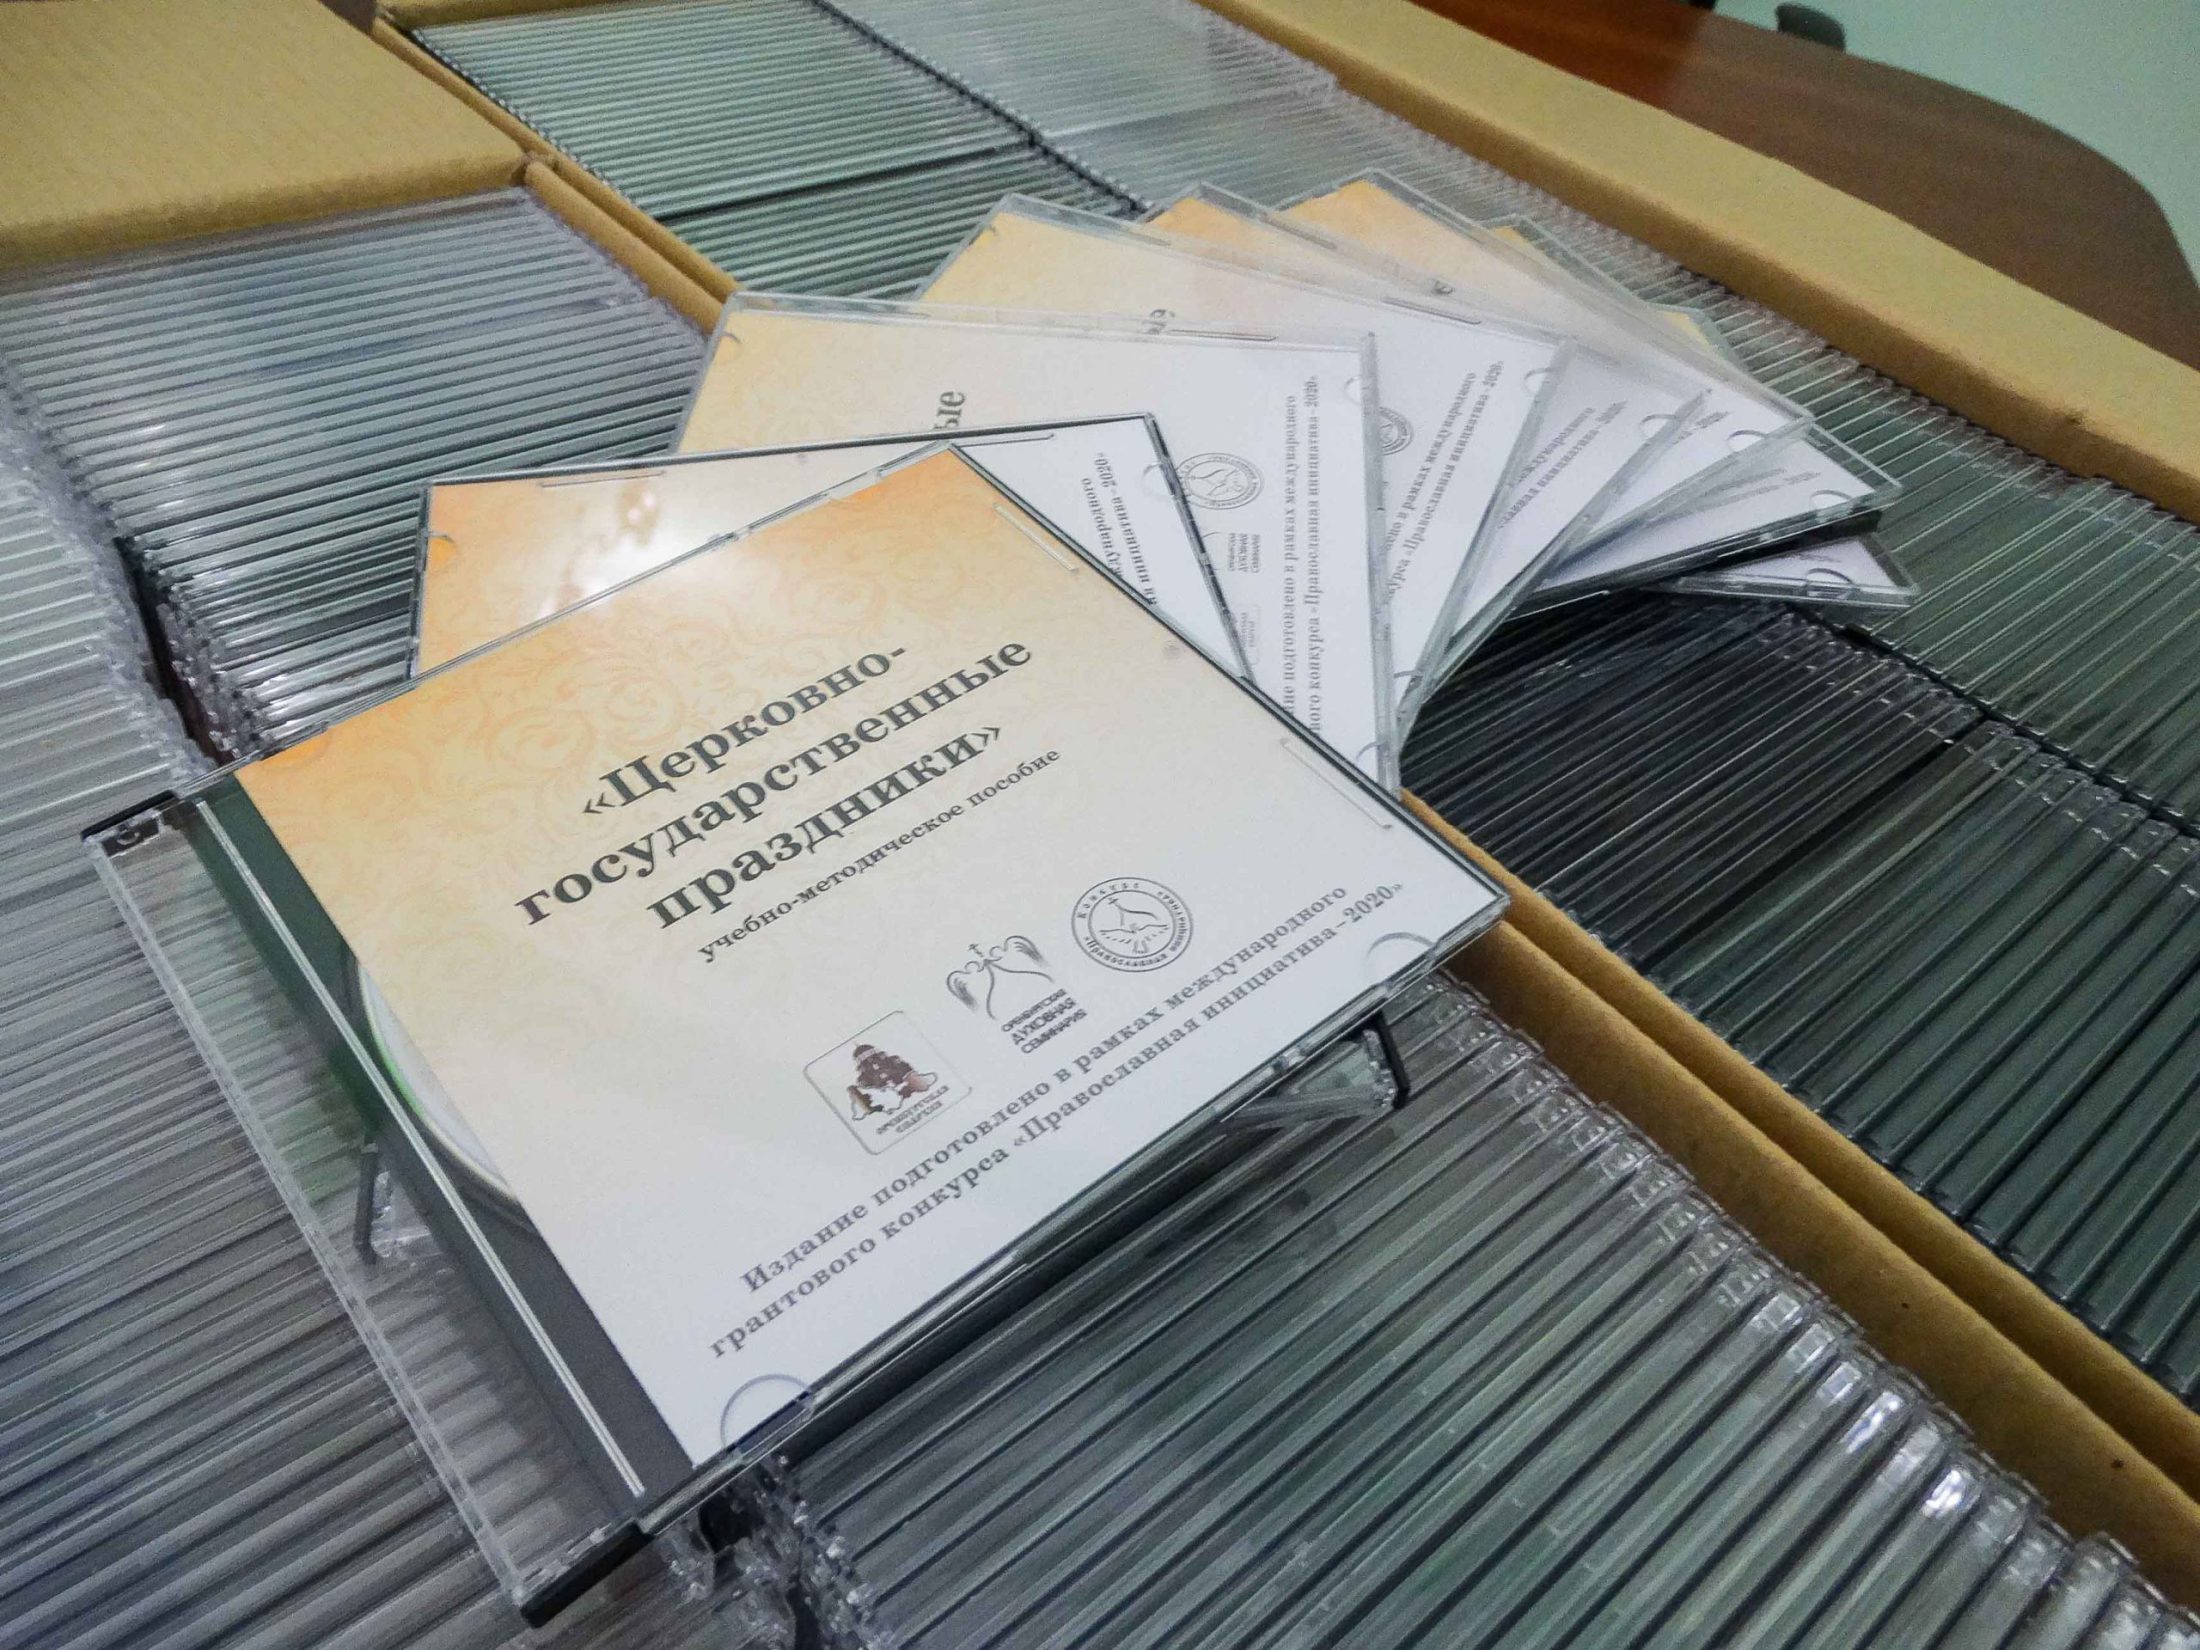 Оренбургская духовная семинария выпустила новое учебно-методическое пособие